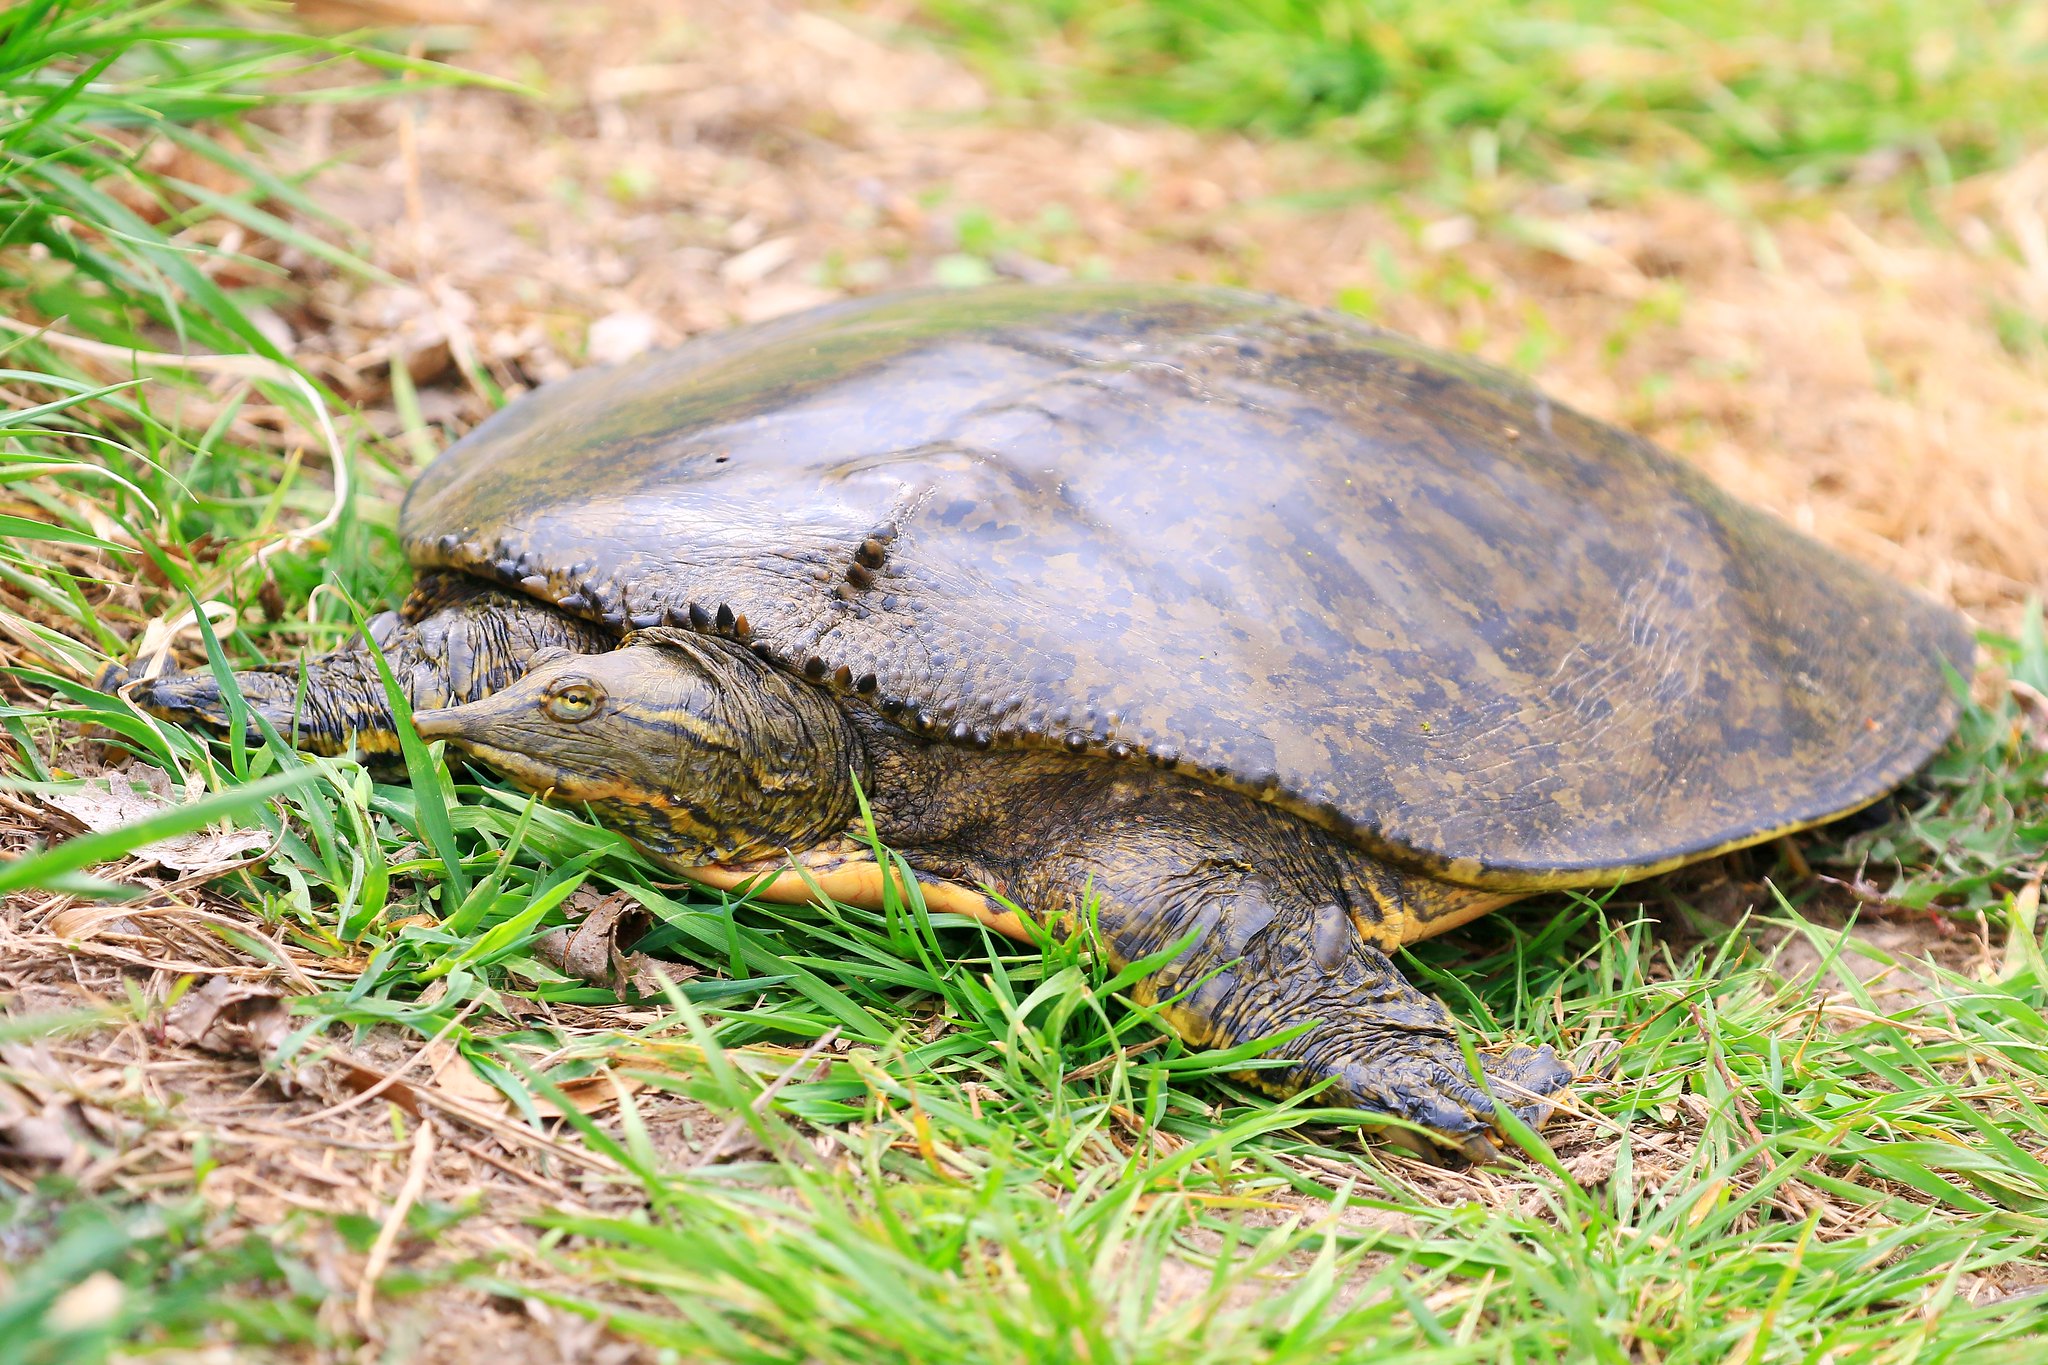 Species spotlight: Iowa's turtles